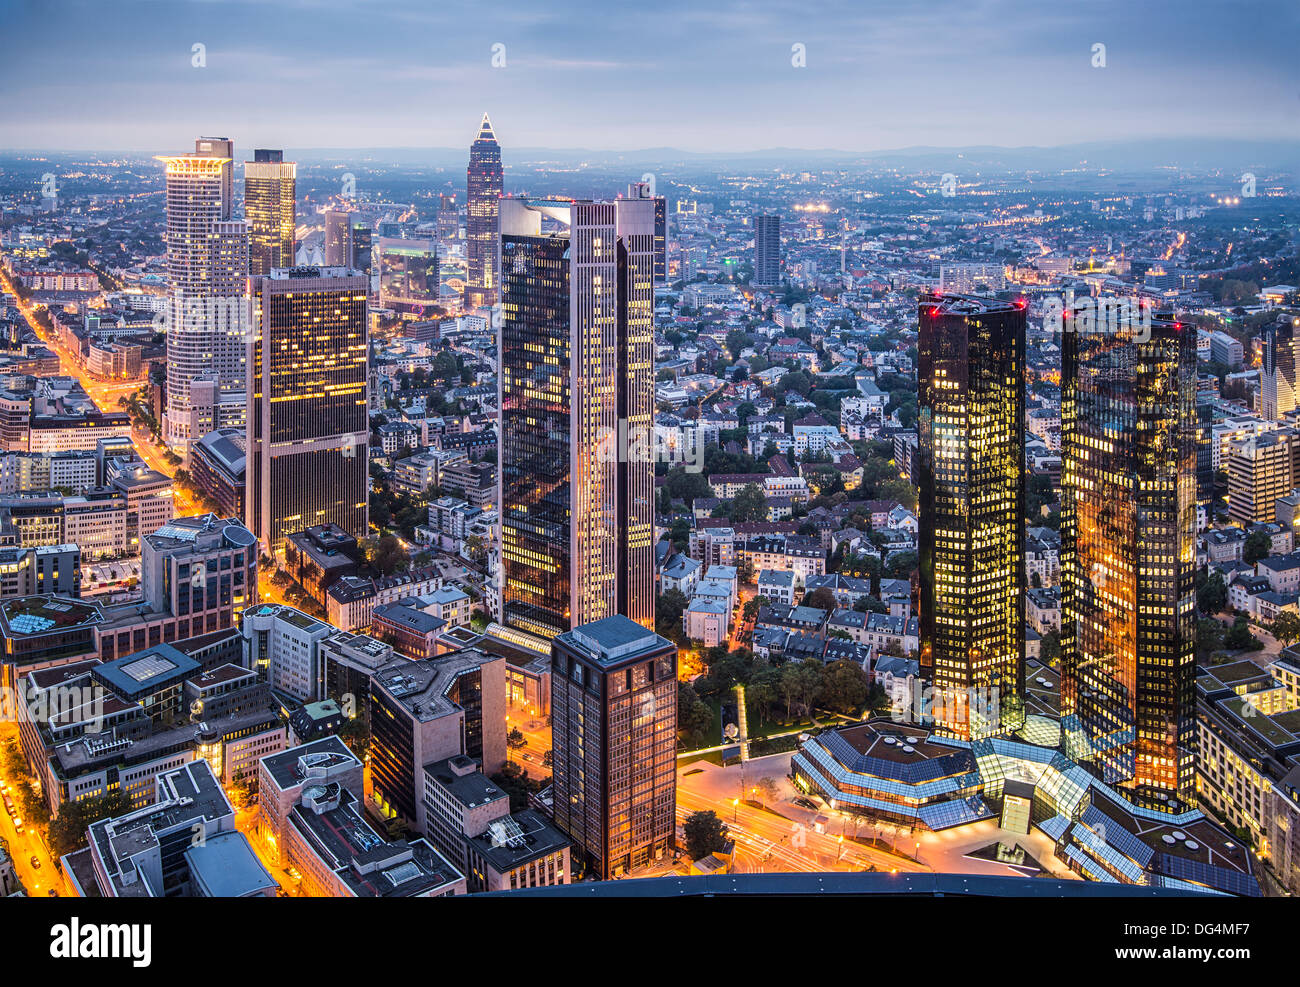 Stadtbild von Frankfurt am Main, das Finanzzentrum des Landes. Stockfoto